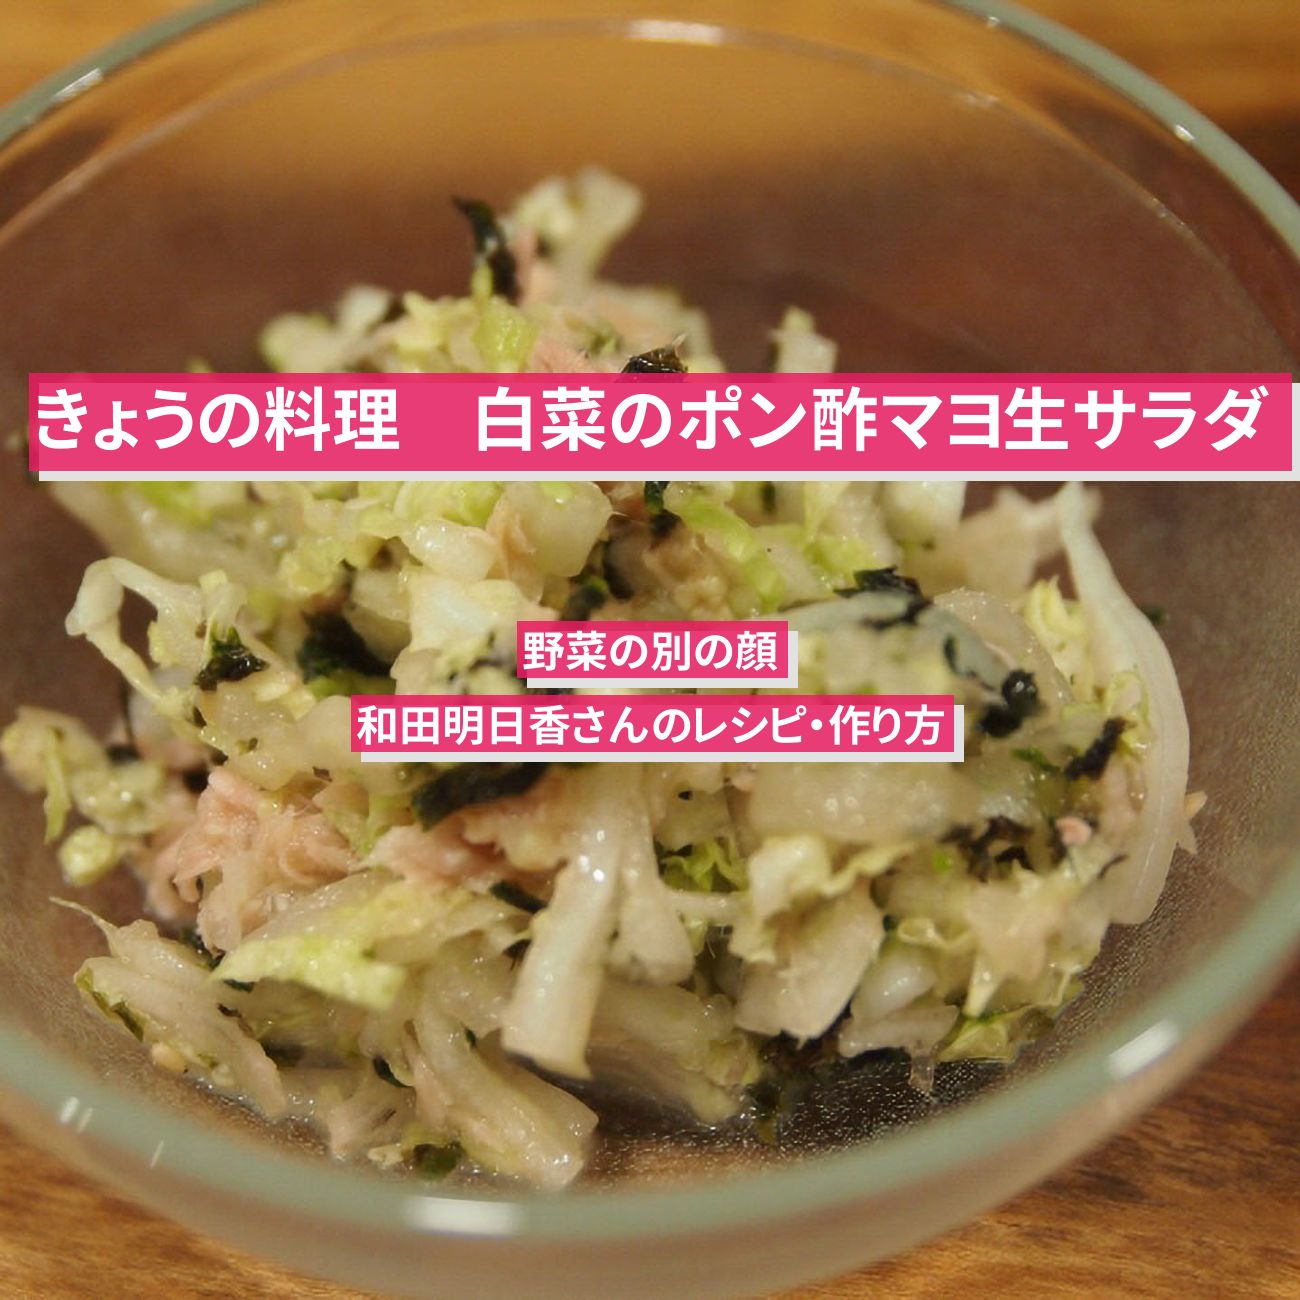 【きょうの料理】『白菜のポン酢マヨ生サラダ』和田明日香さんのレシピ・作り方